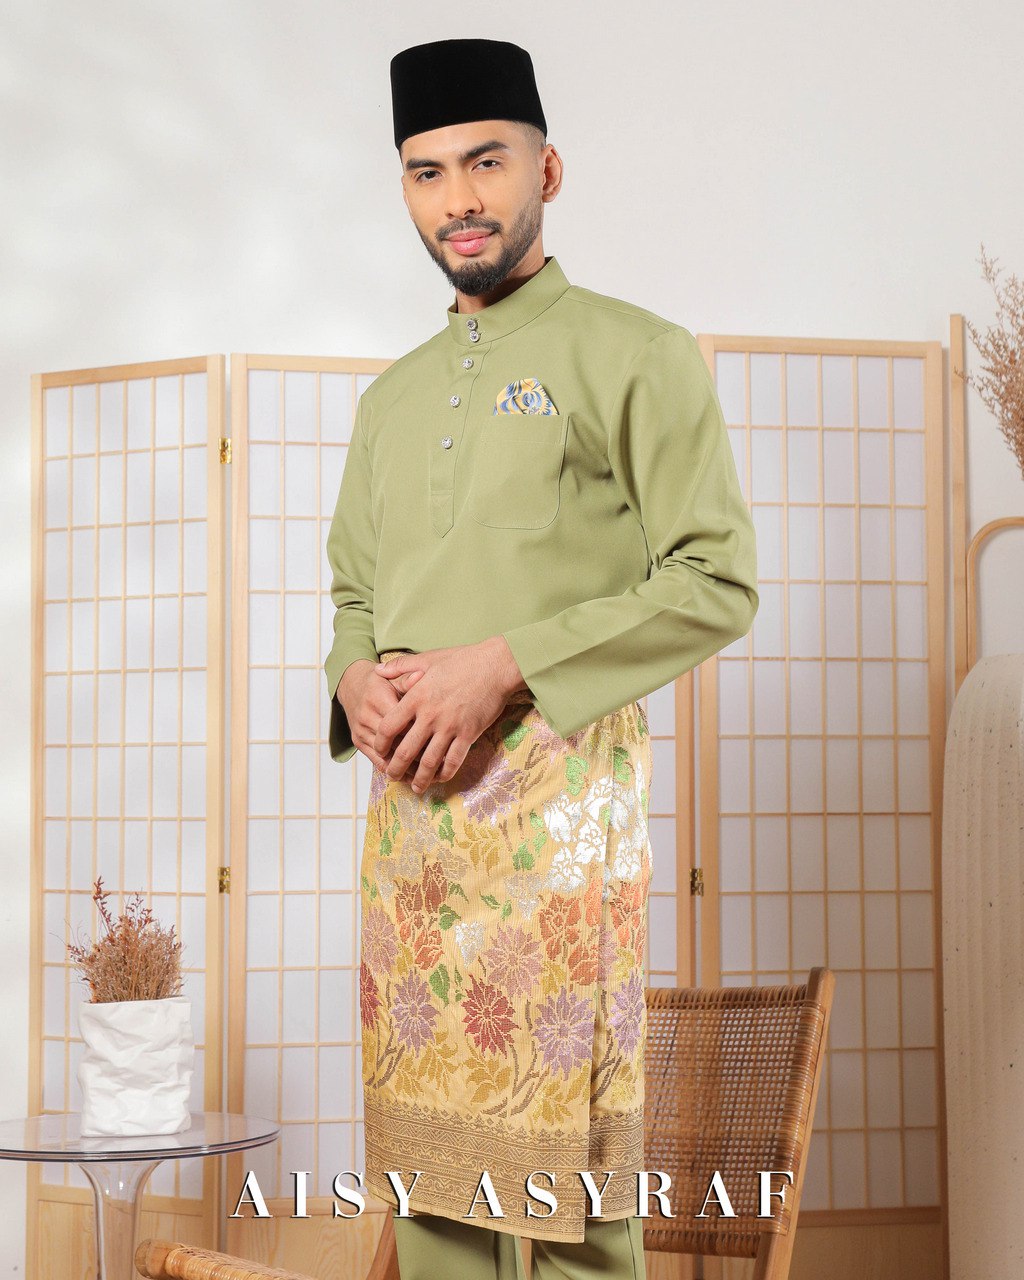 Baju Melayu Zaidan - Green Tea